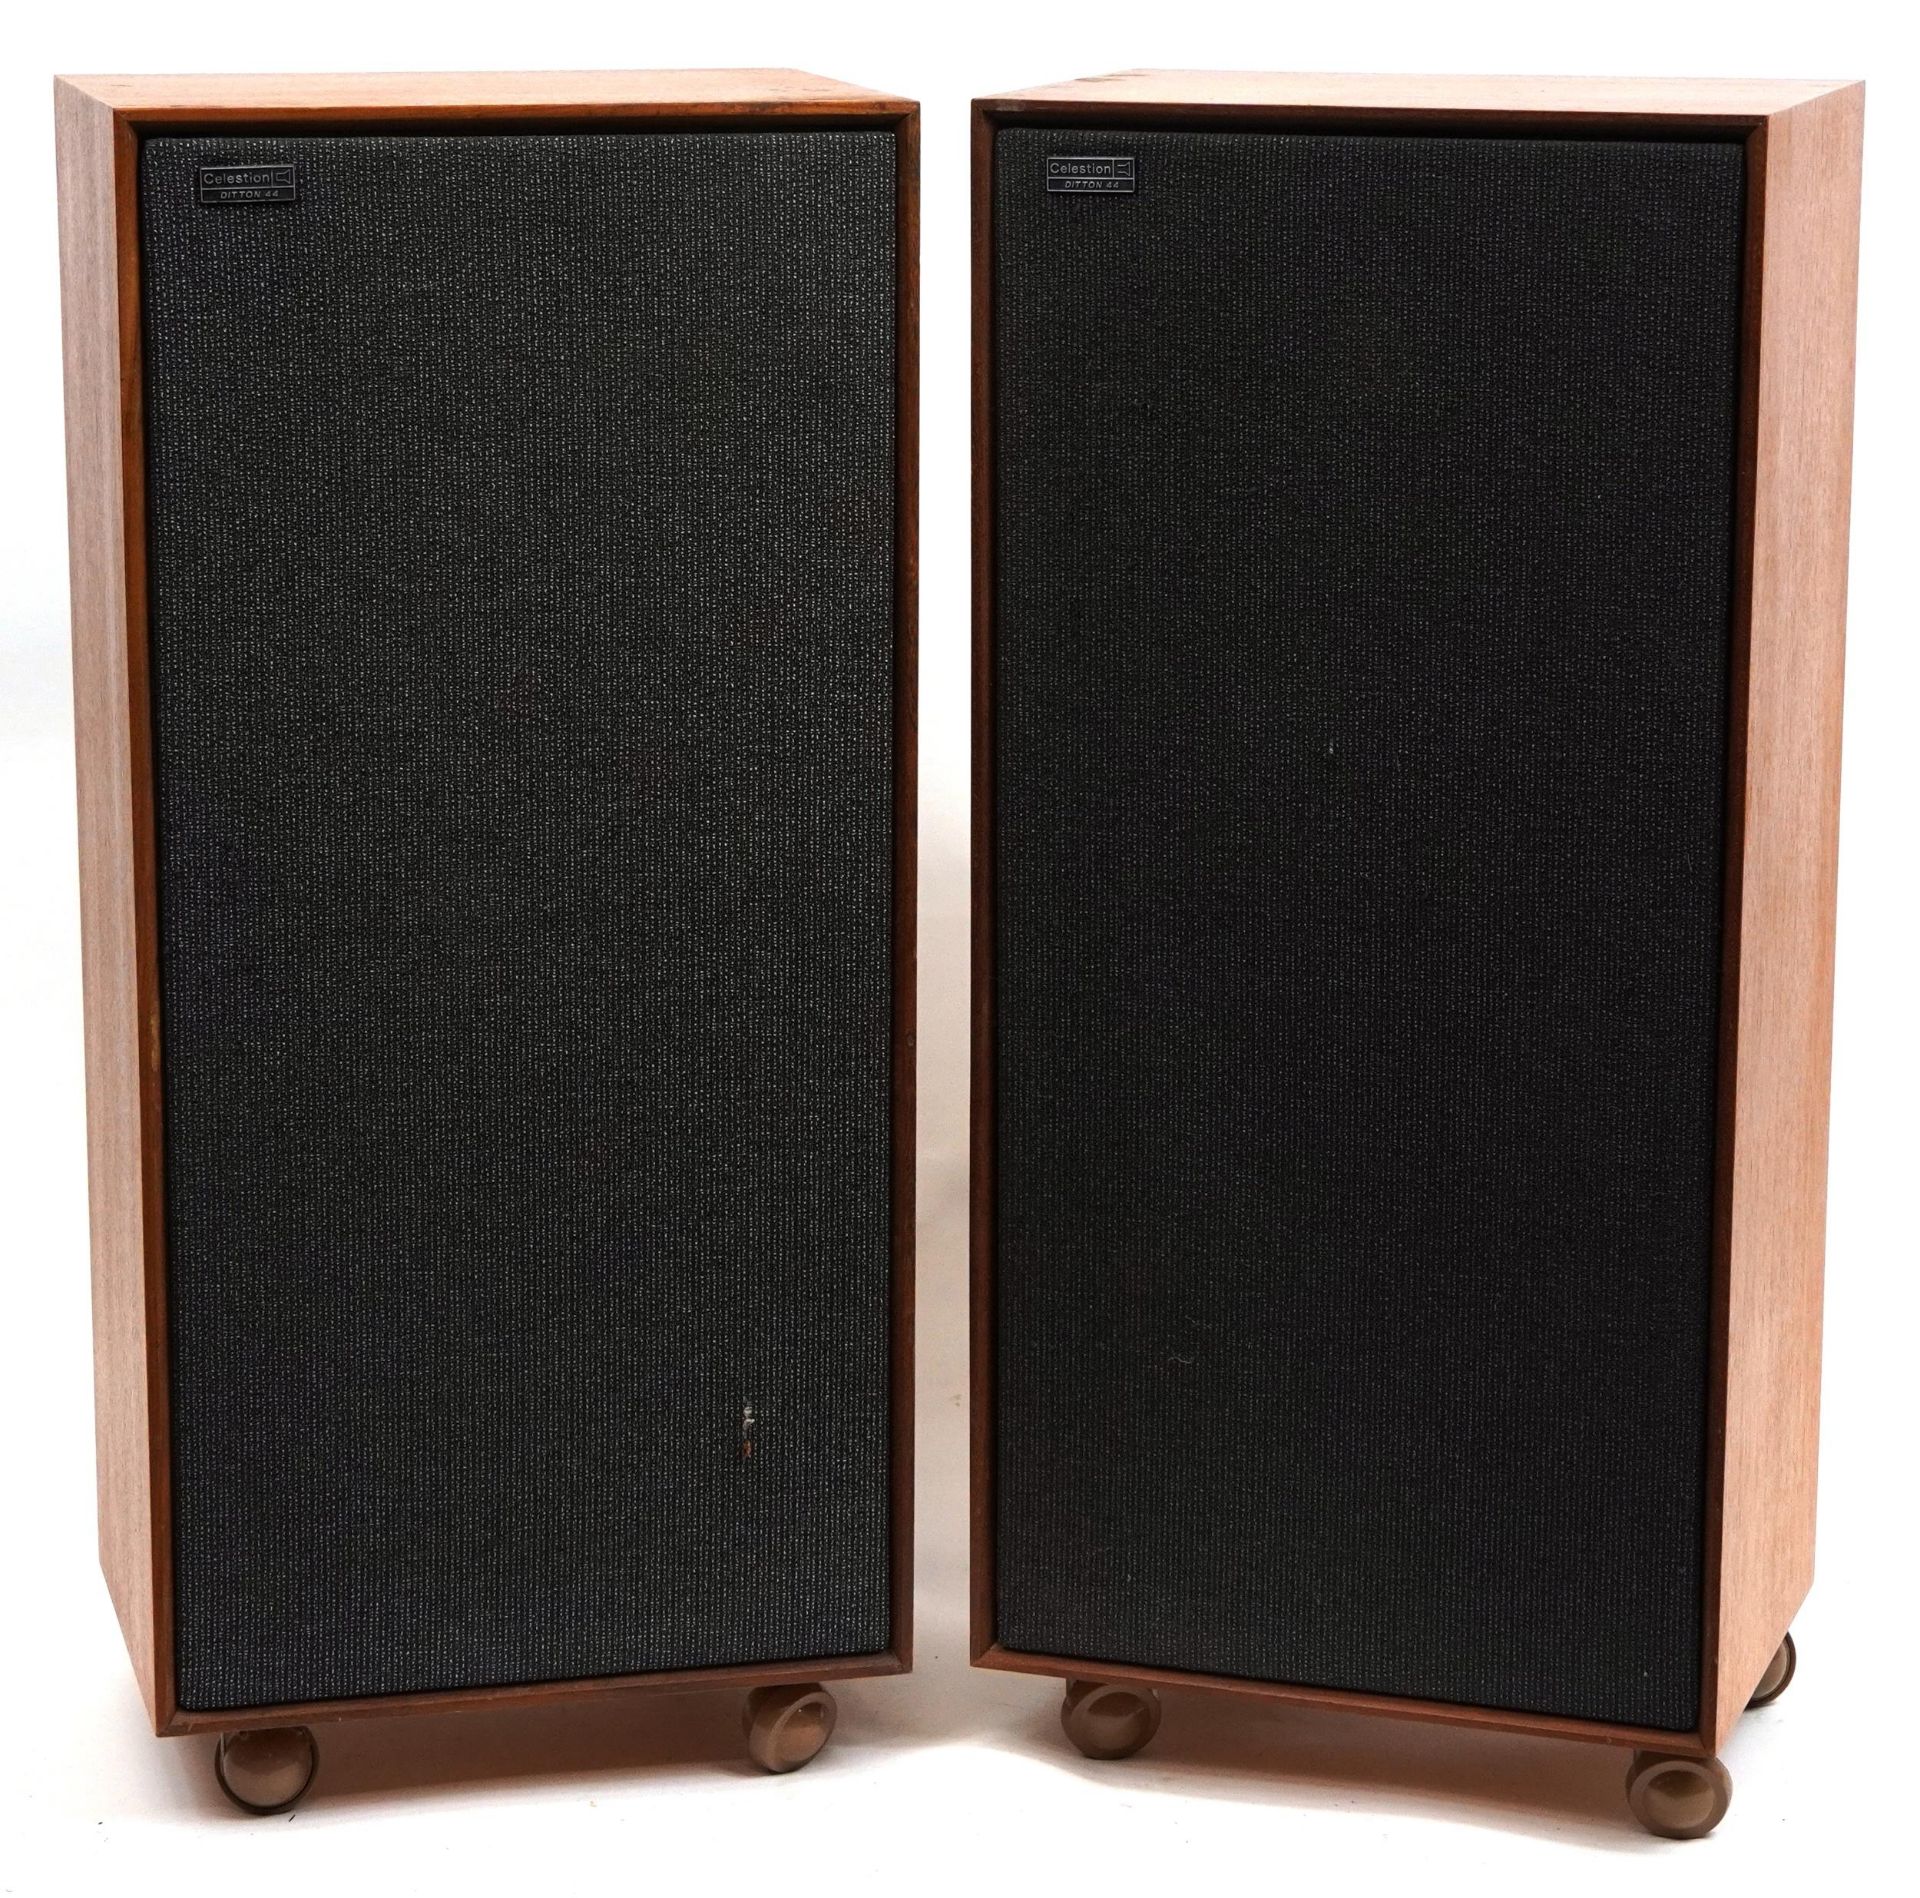 Pair of vintage Celestion Ditton 44 teak framed speakers, each 82cm high